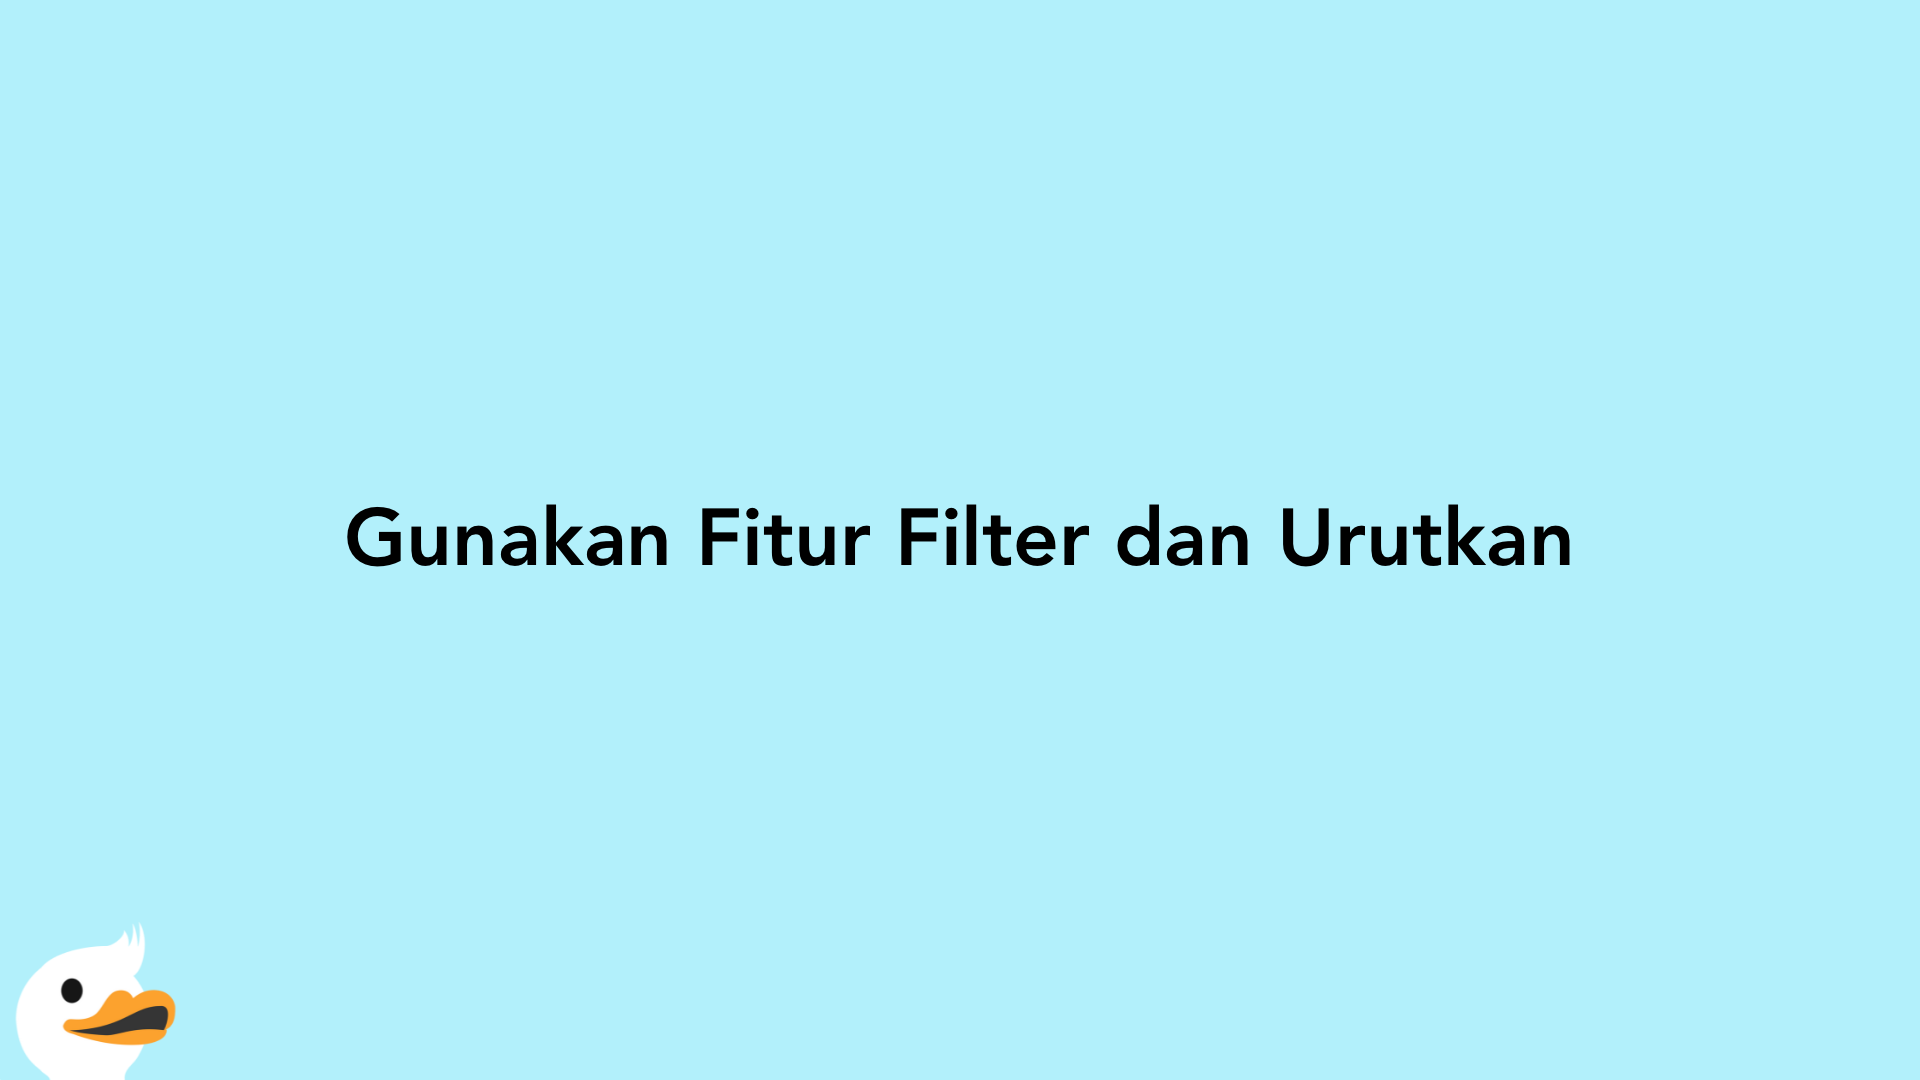 Gunakan Fitur Filter dan Urutkan